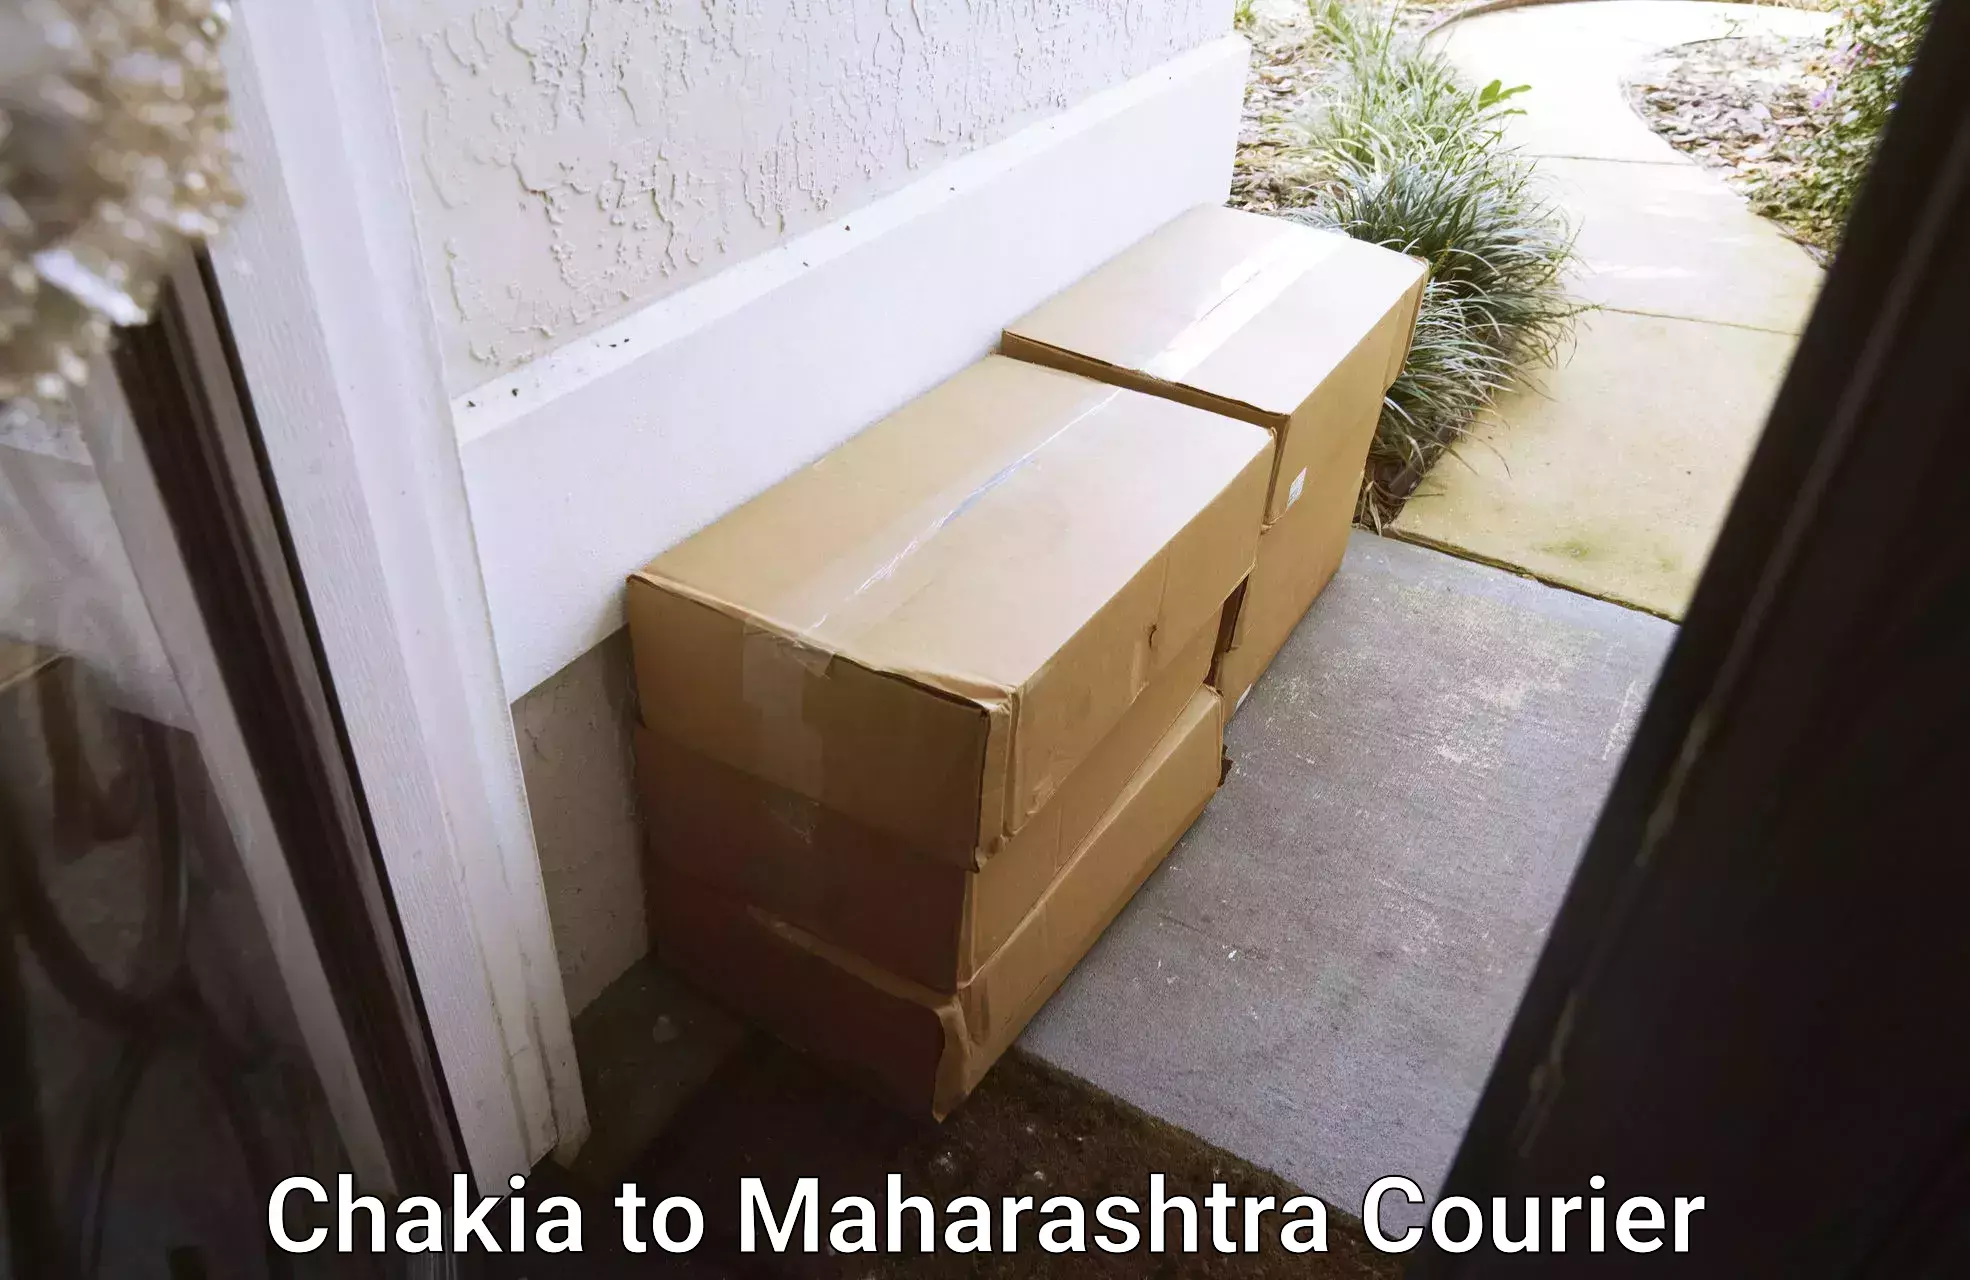 Moving service excellence Chakia to Maharashtra